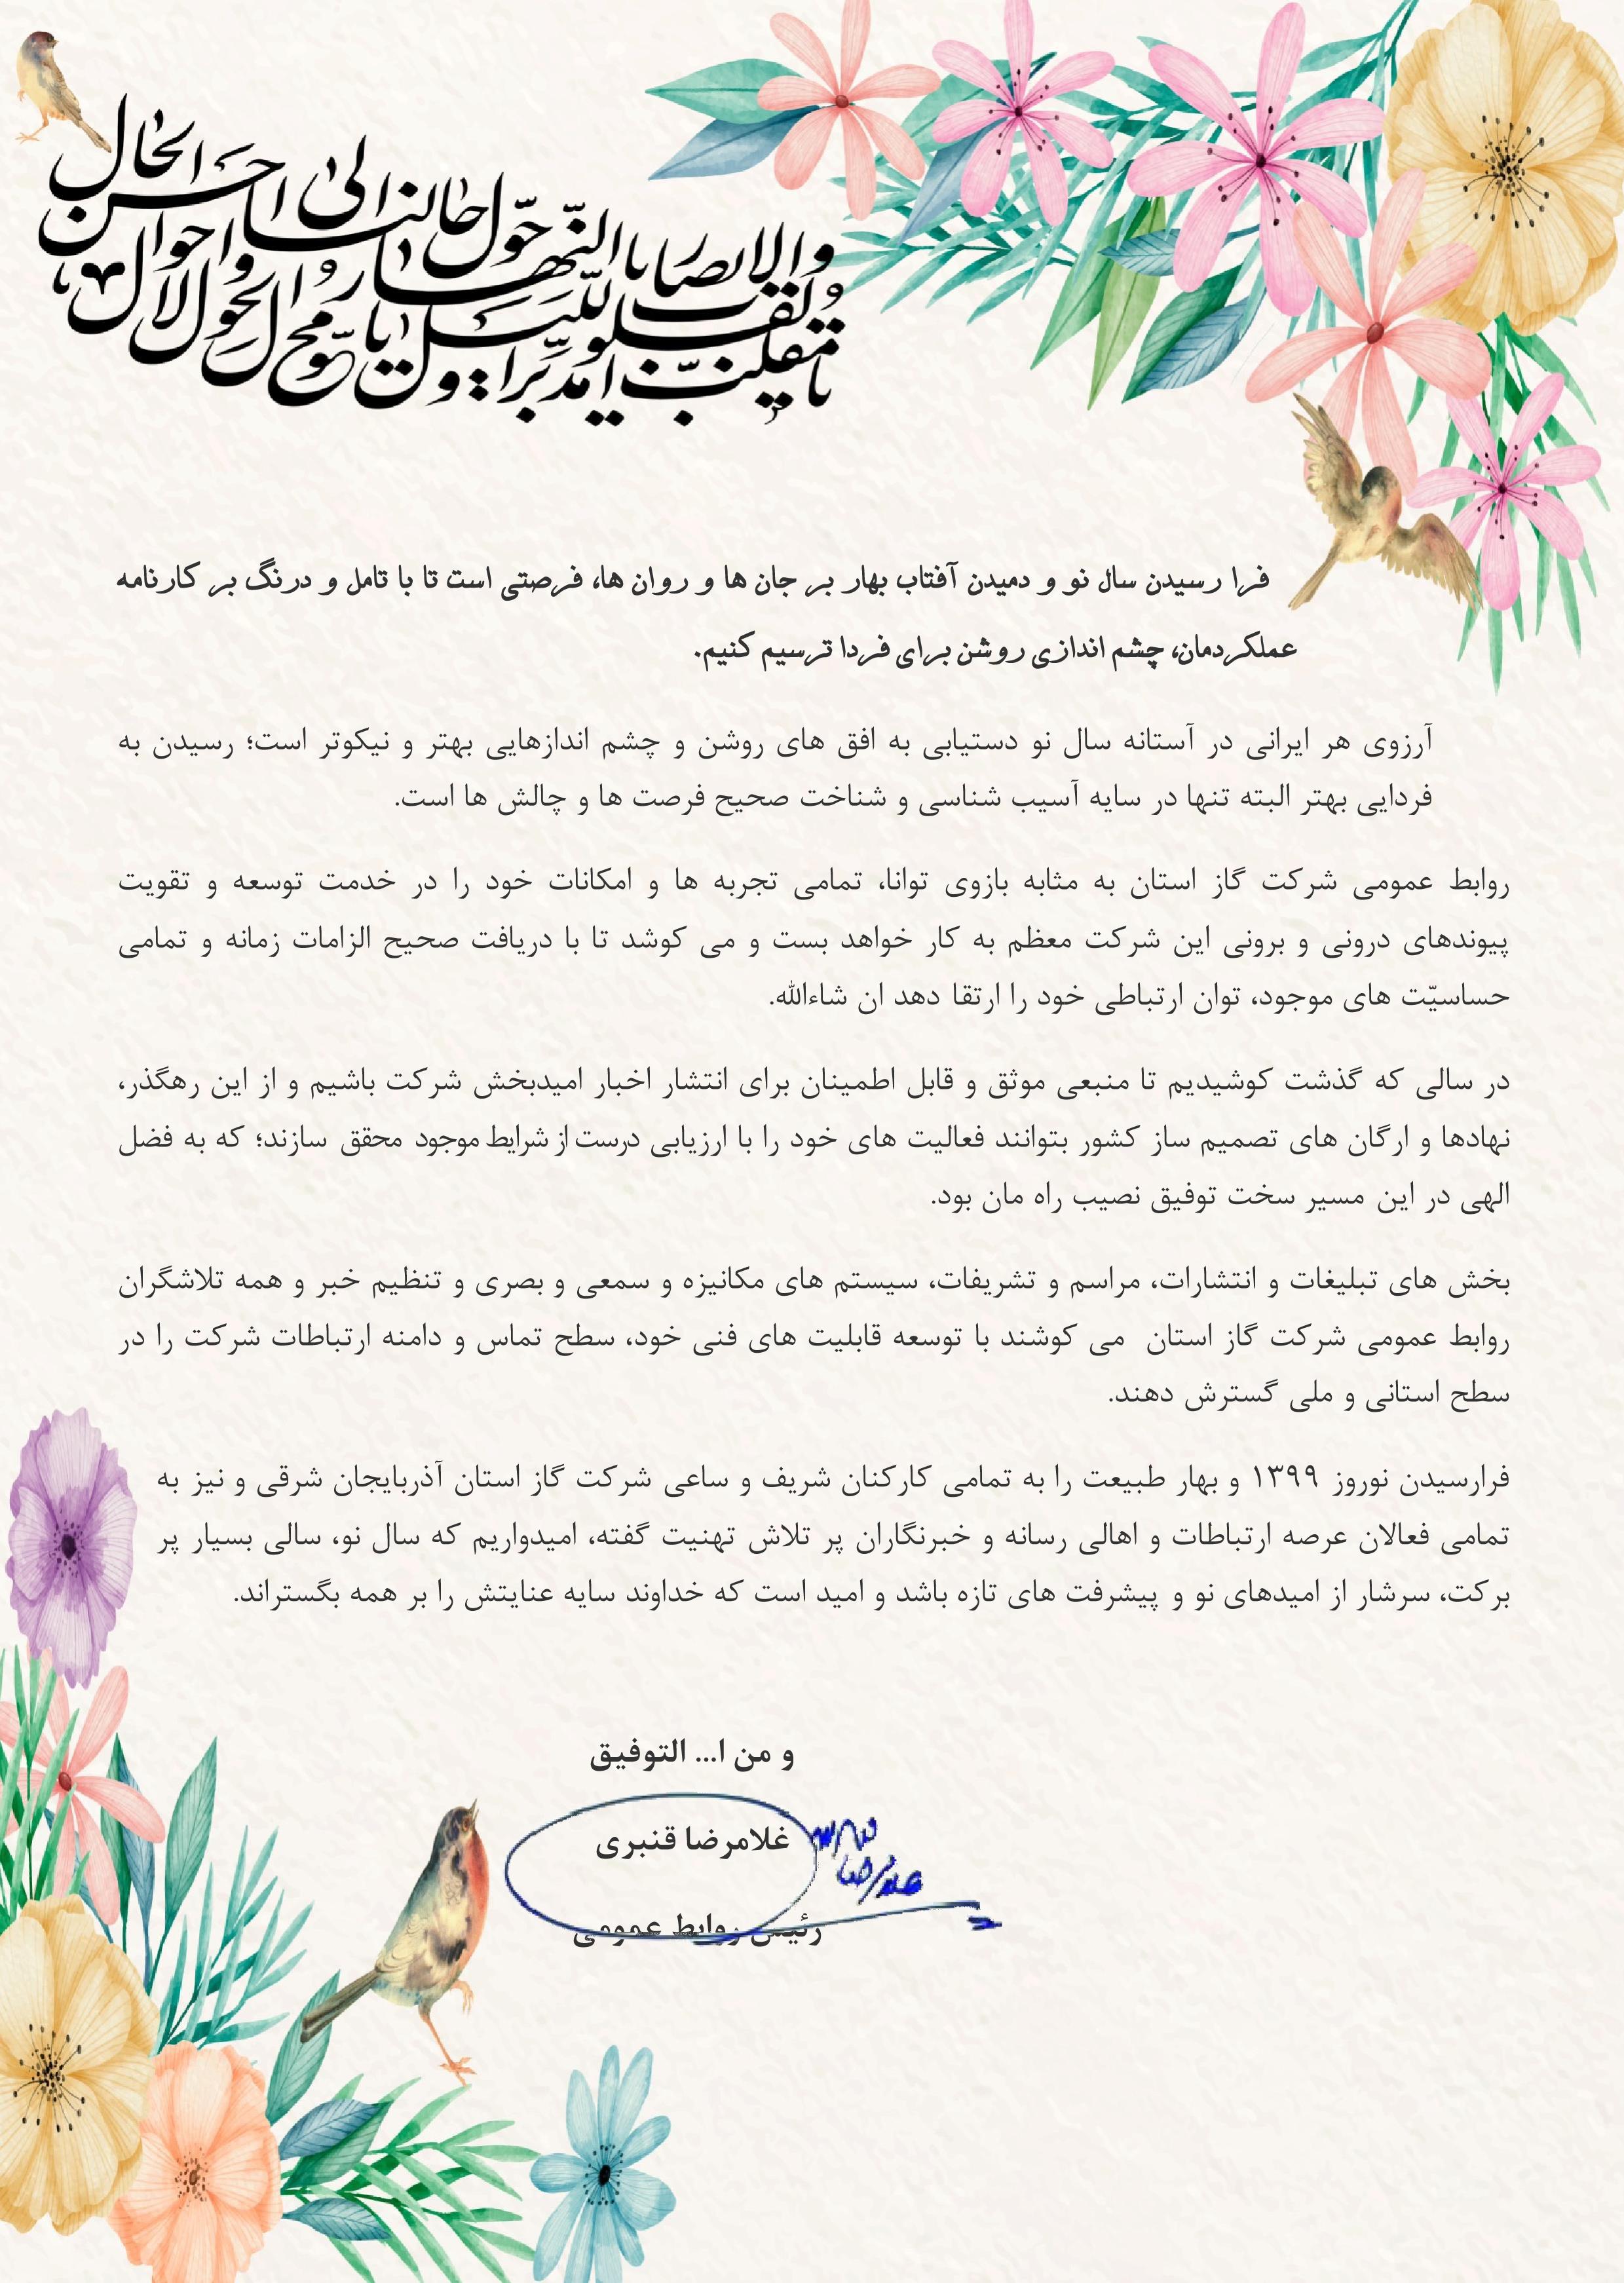 پیام تبریک عید نوروز رئیس روابط عمومی شرکت گاز استان - شرکت گاز ...